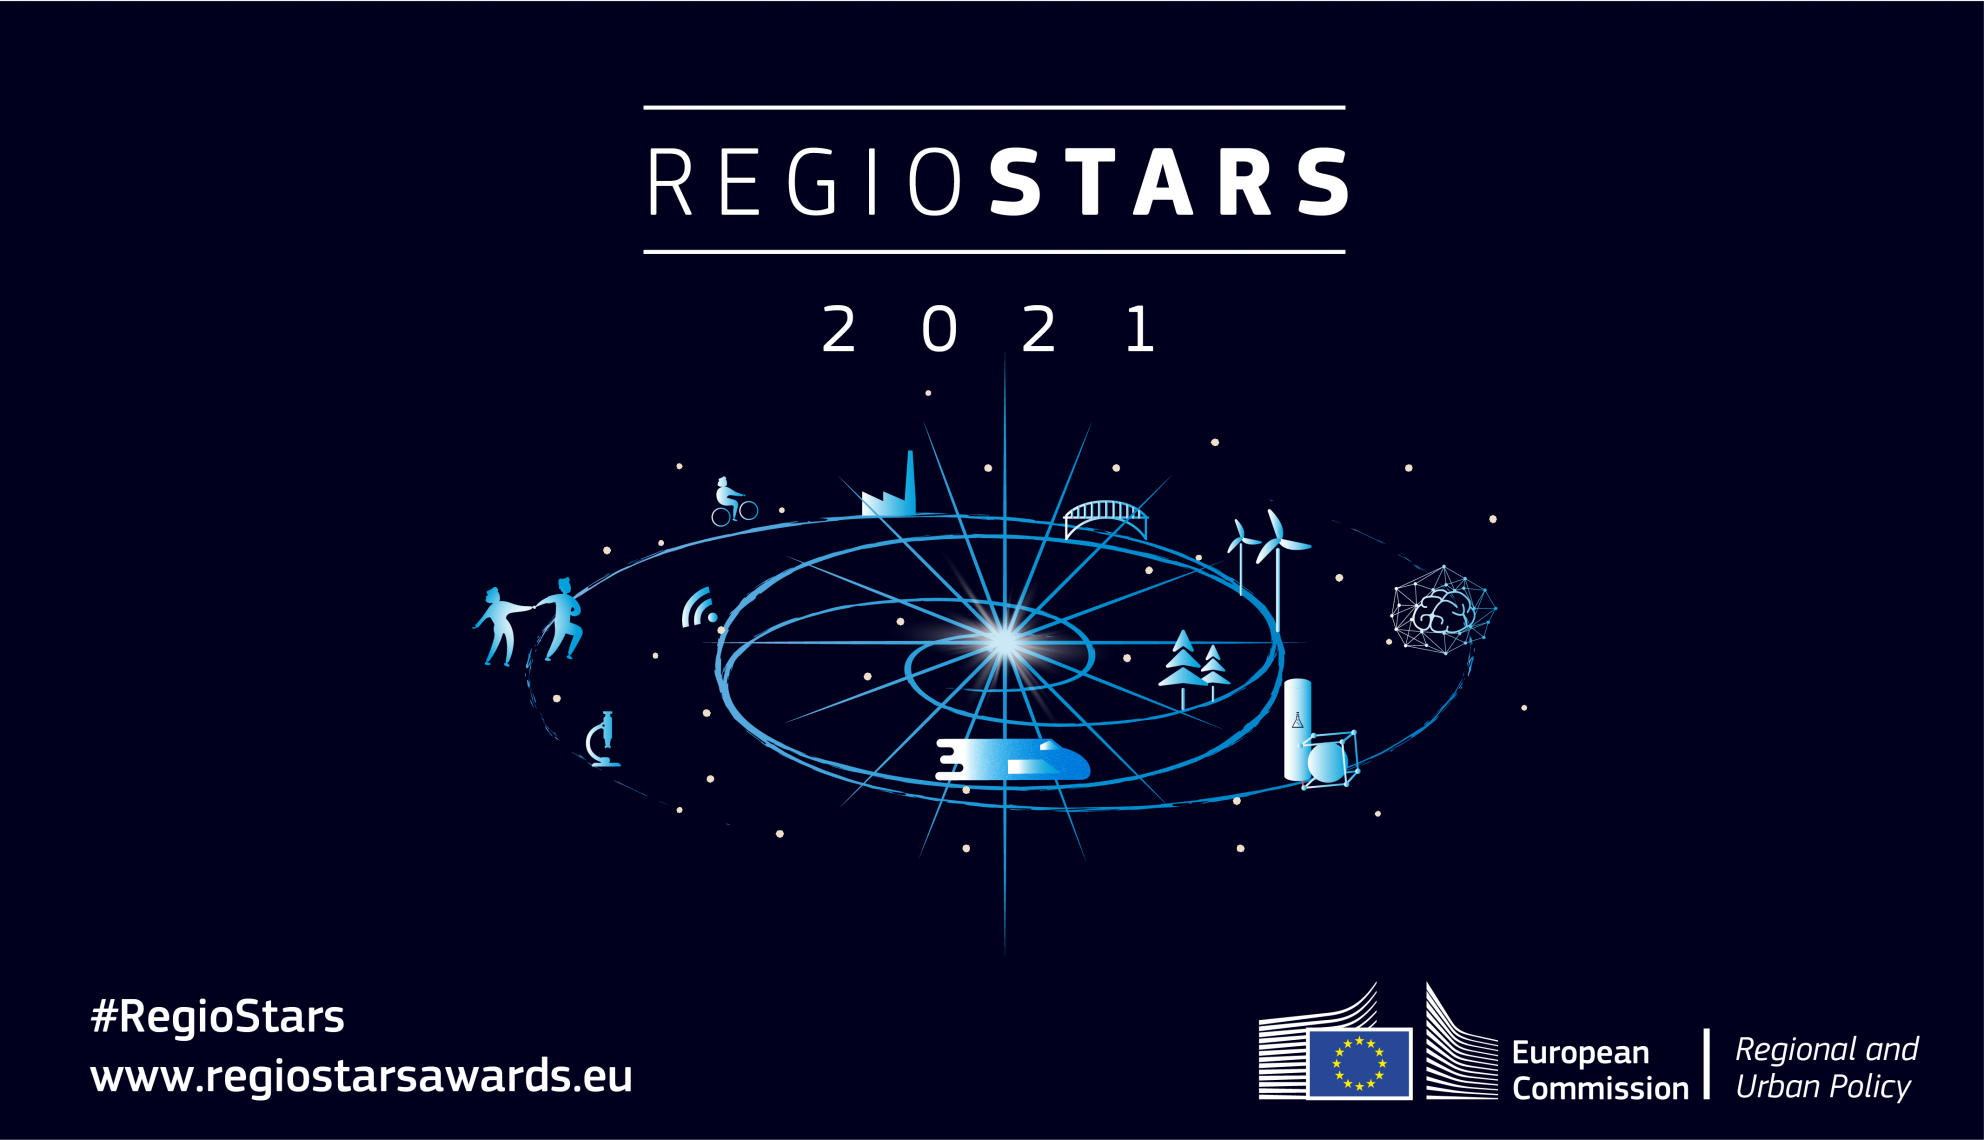 regiostars logo with hashtags